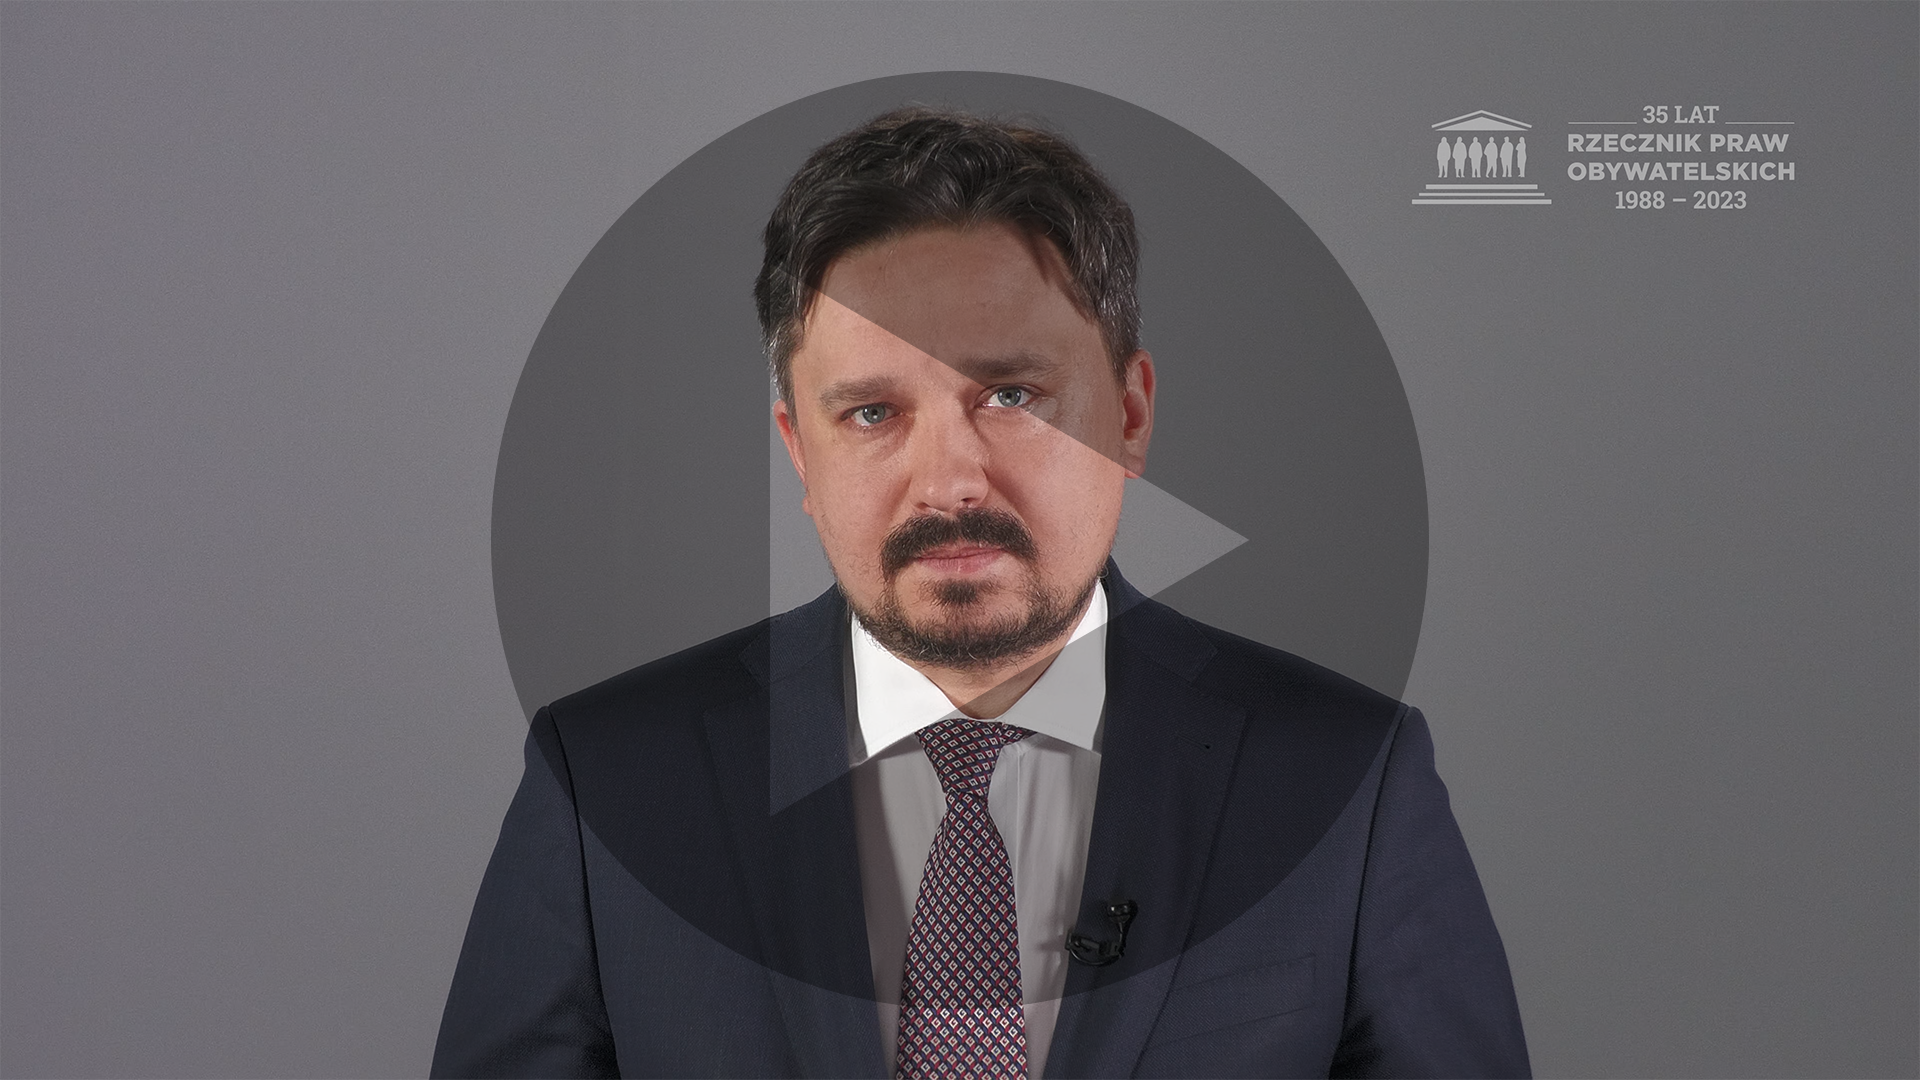 Kadr z nagrania przedstawiający RPO Marcina Wiącka z naniesionym symbolem odtwarzania wideo